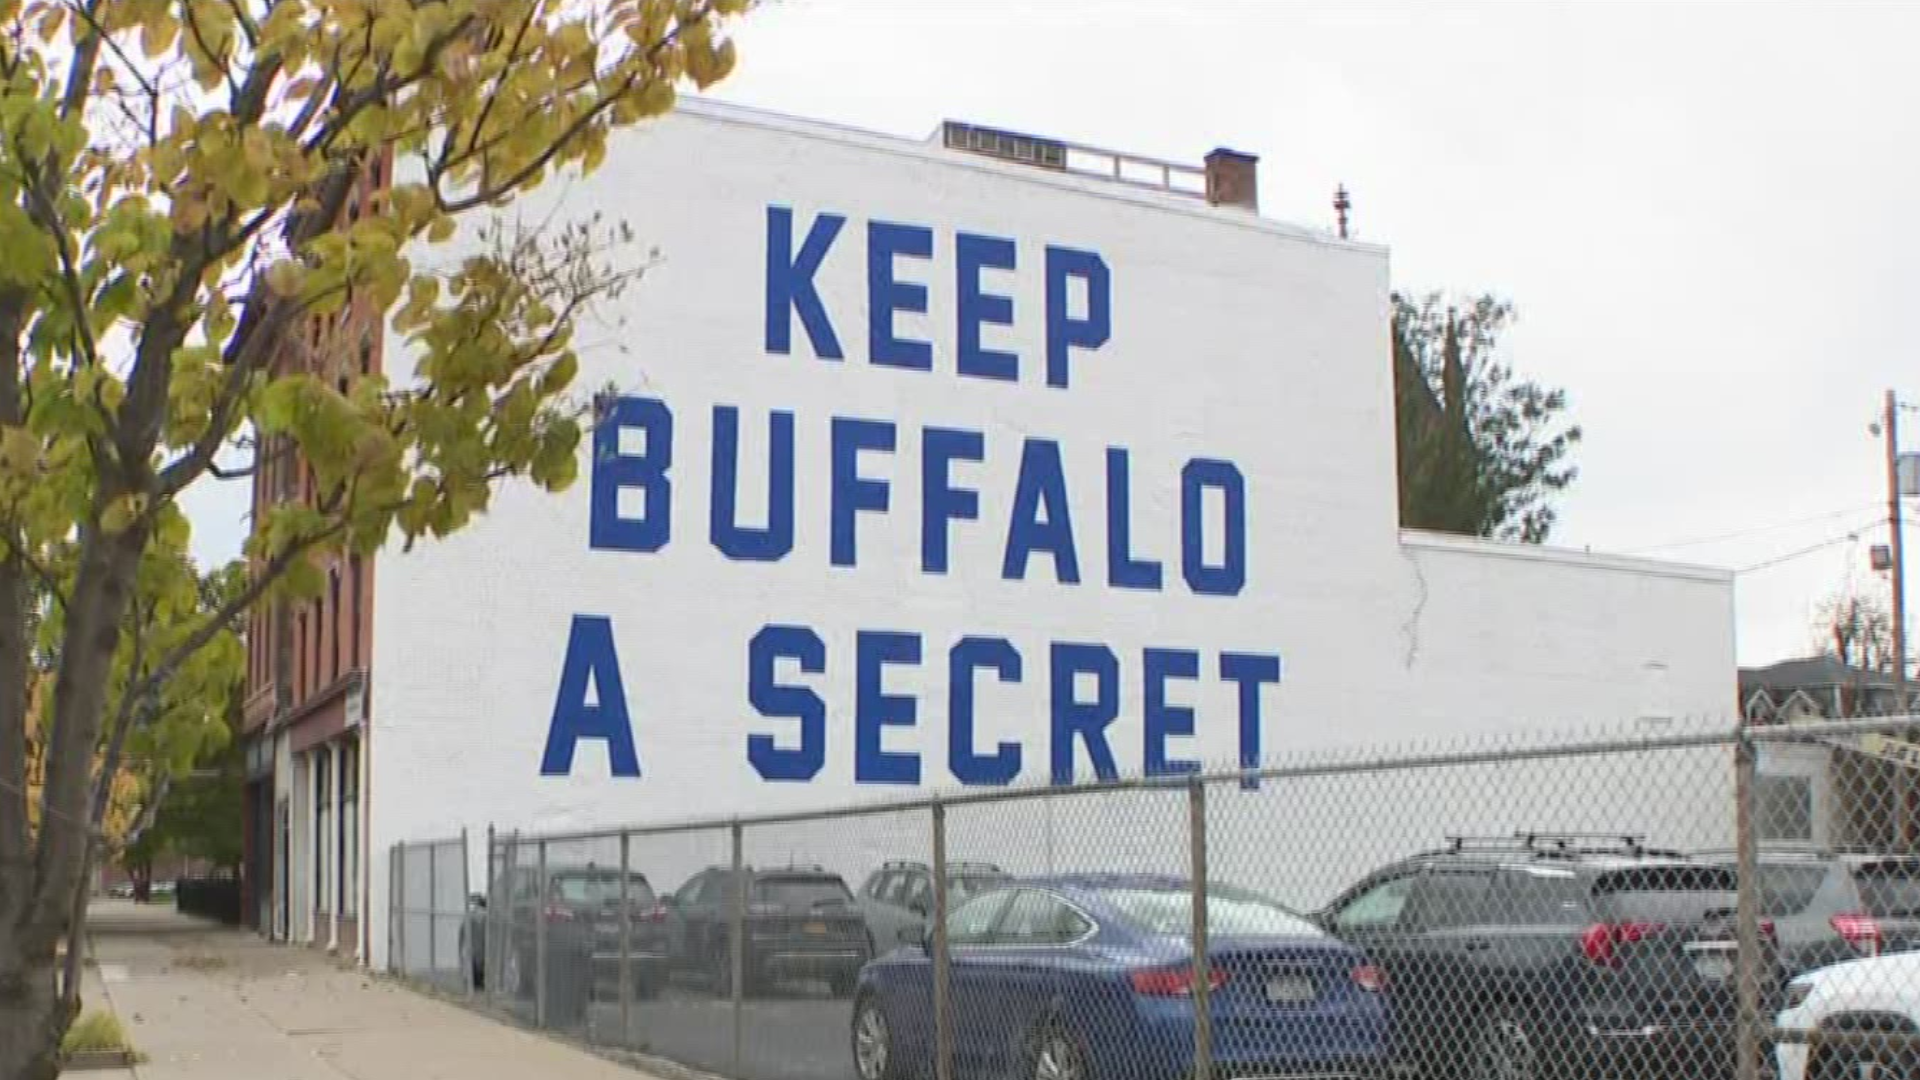 NEW "KEEP BUFFALO A SECRET" MURAL